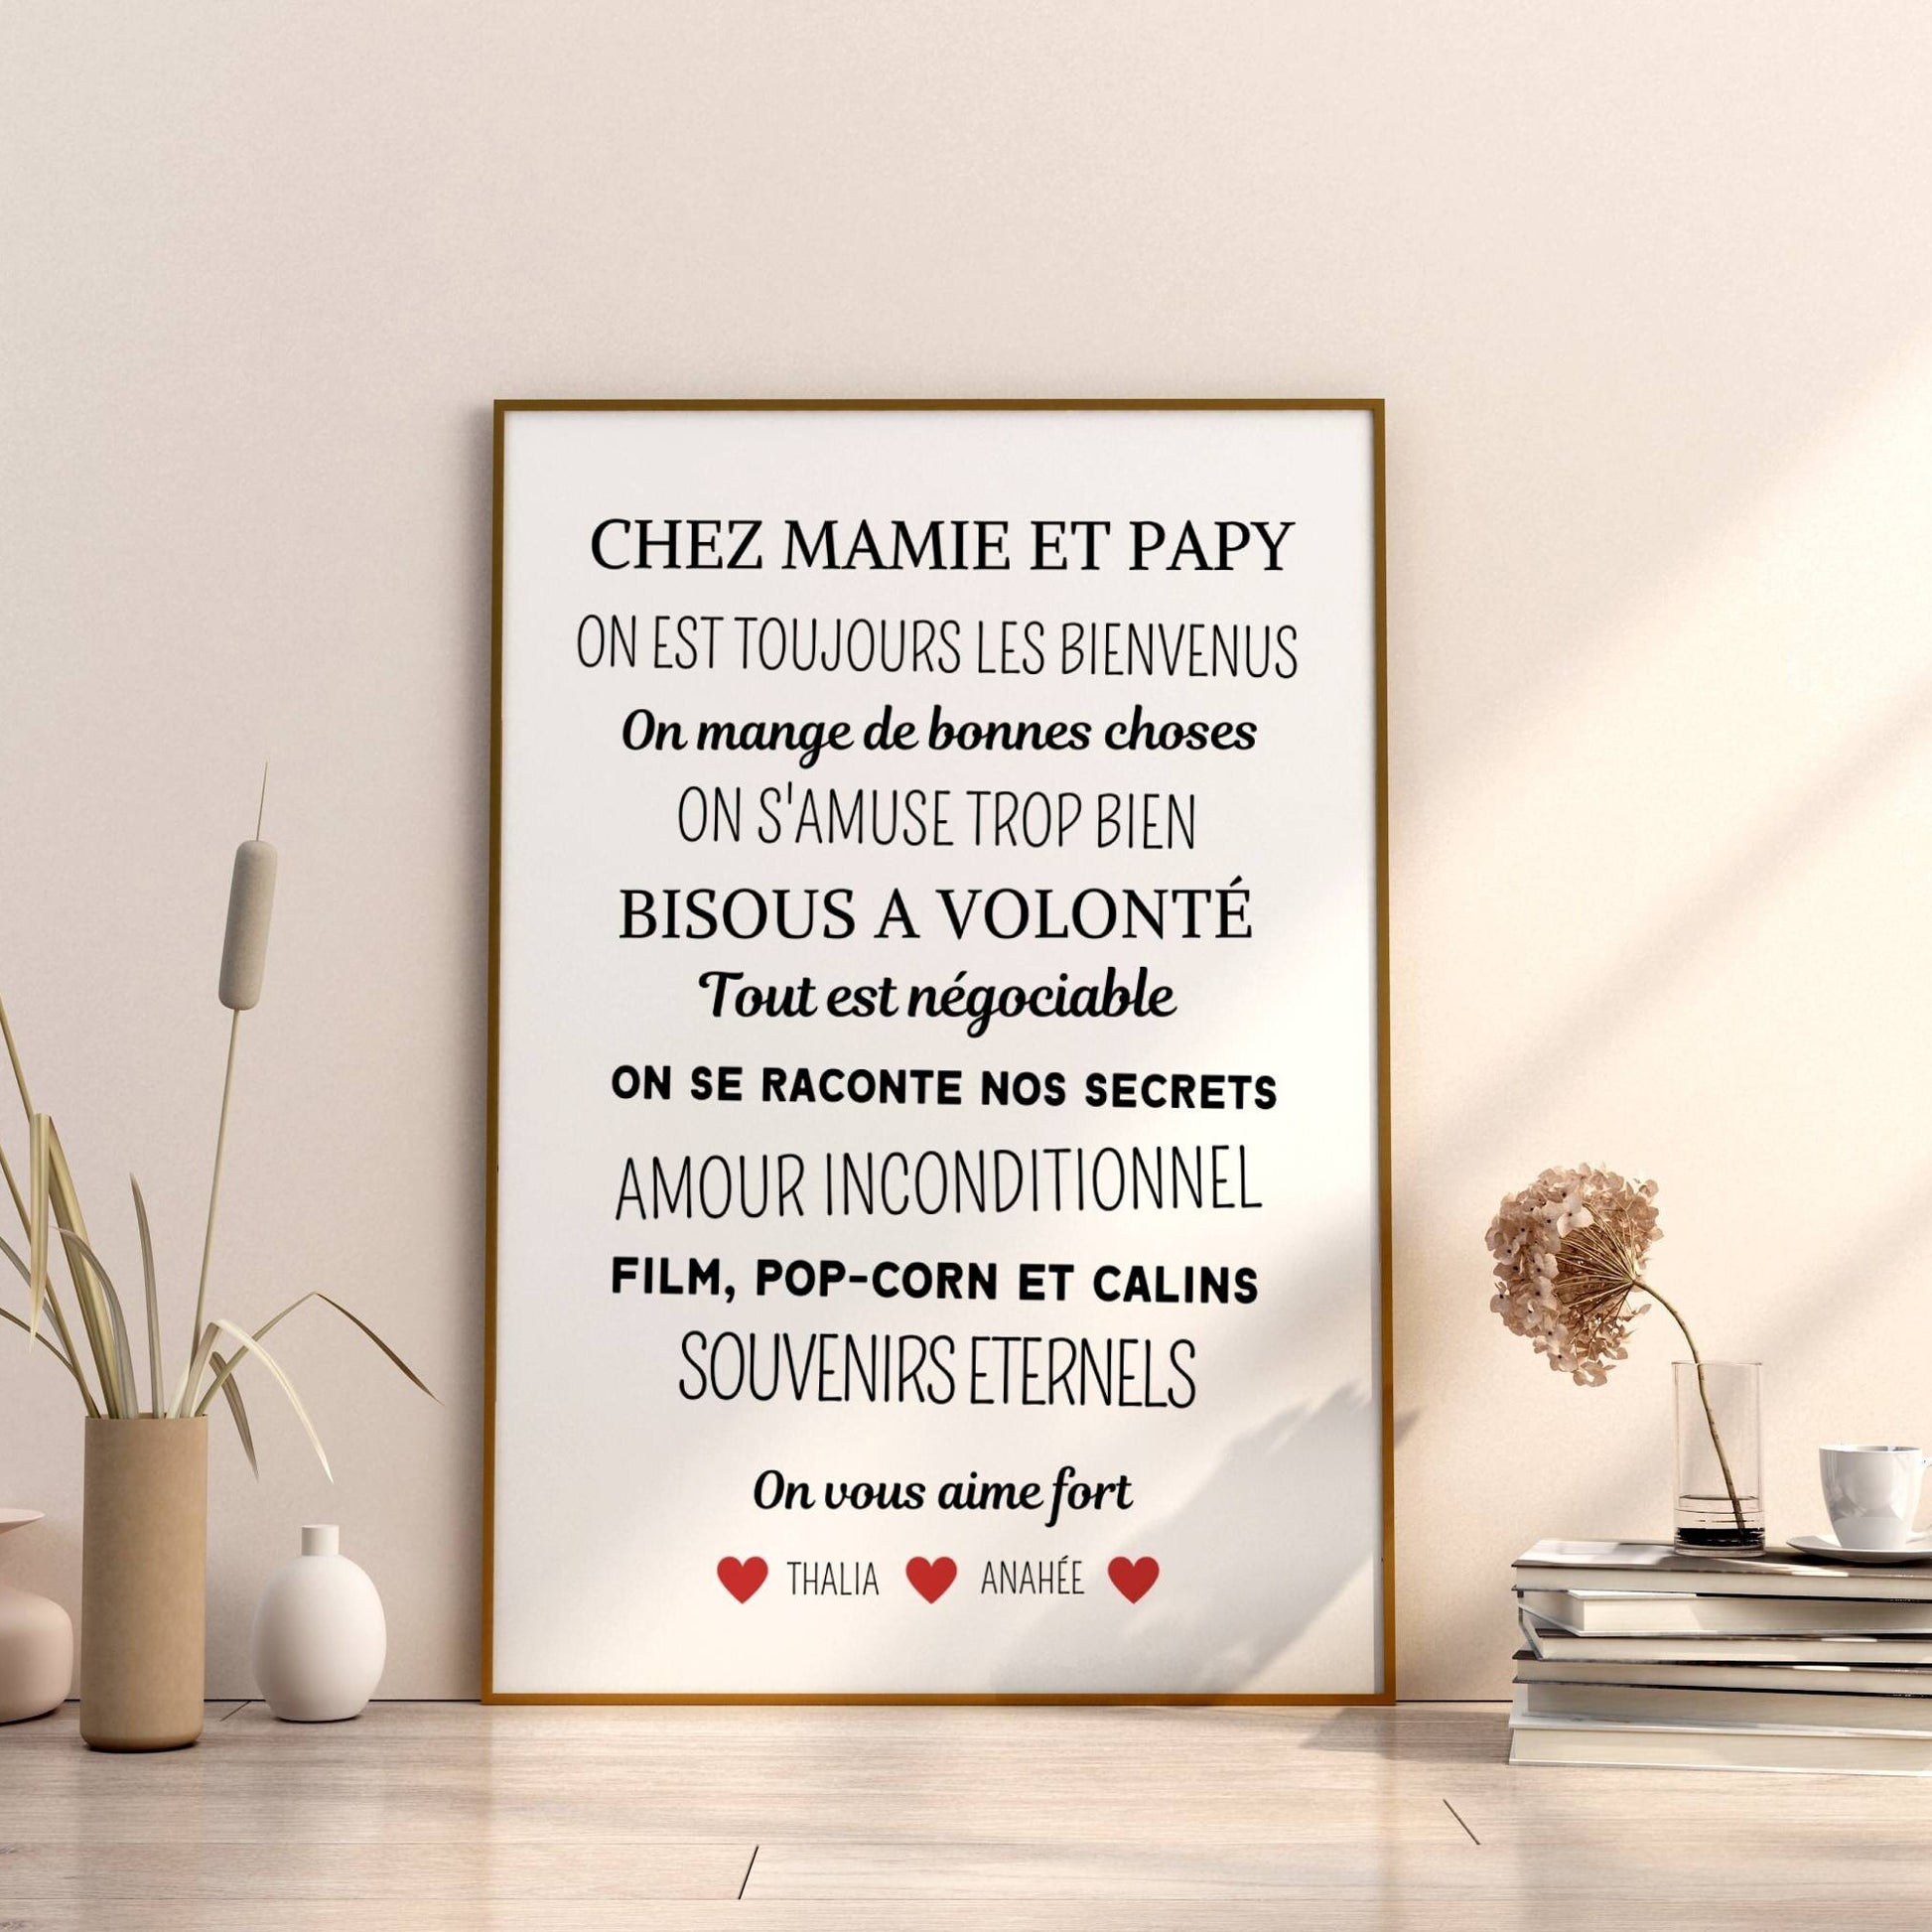 Affiche - Chez papi et mamie - Version PDF